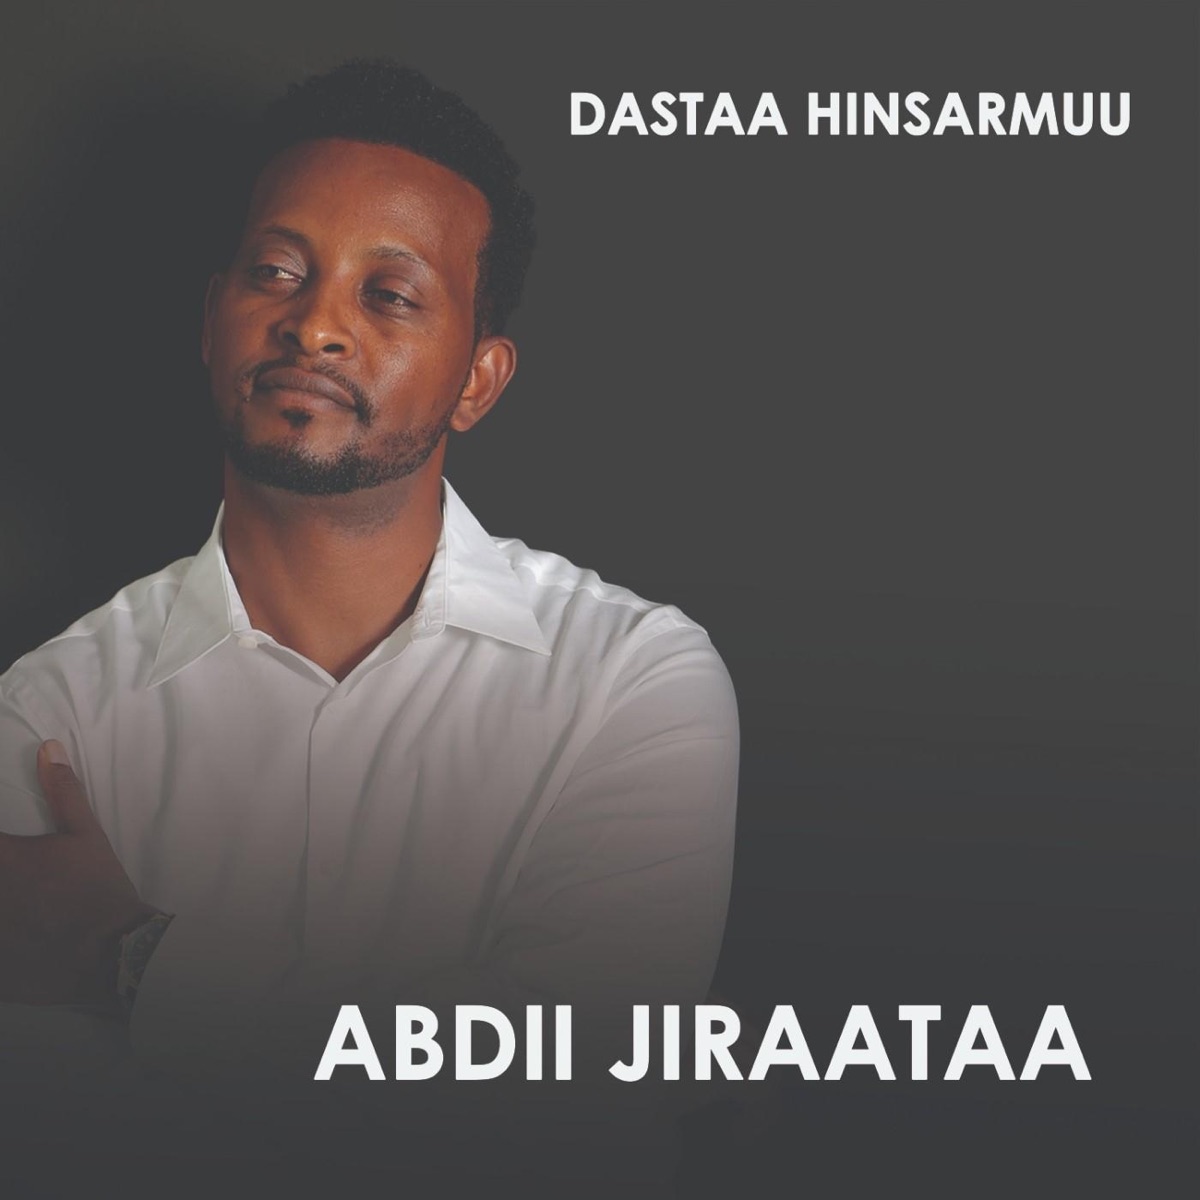 Abdii Jiraataa - Album by Dastaa Hinsarmuu - Apple Music